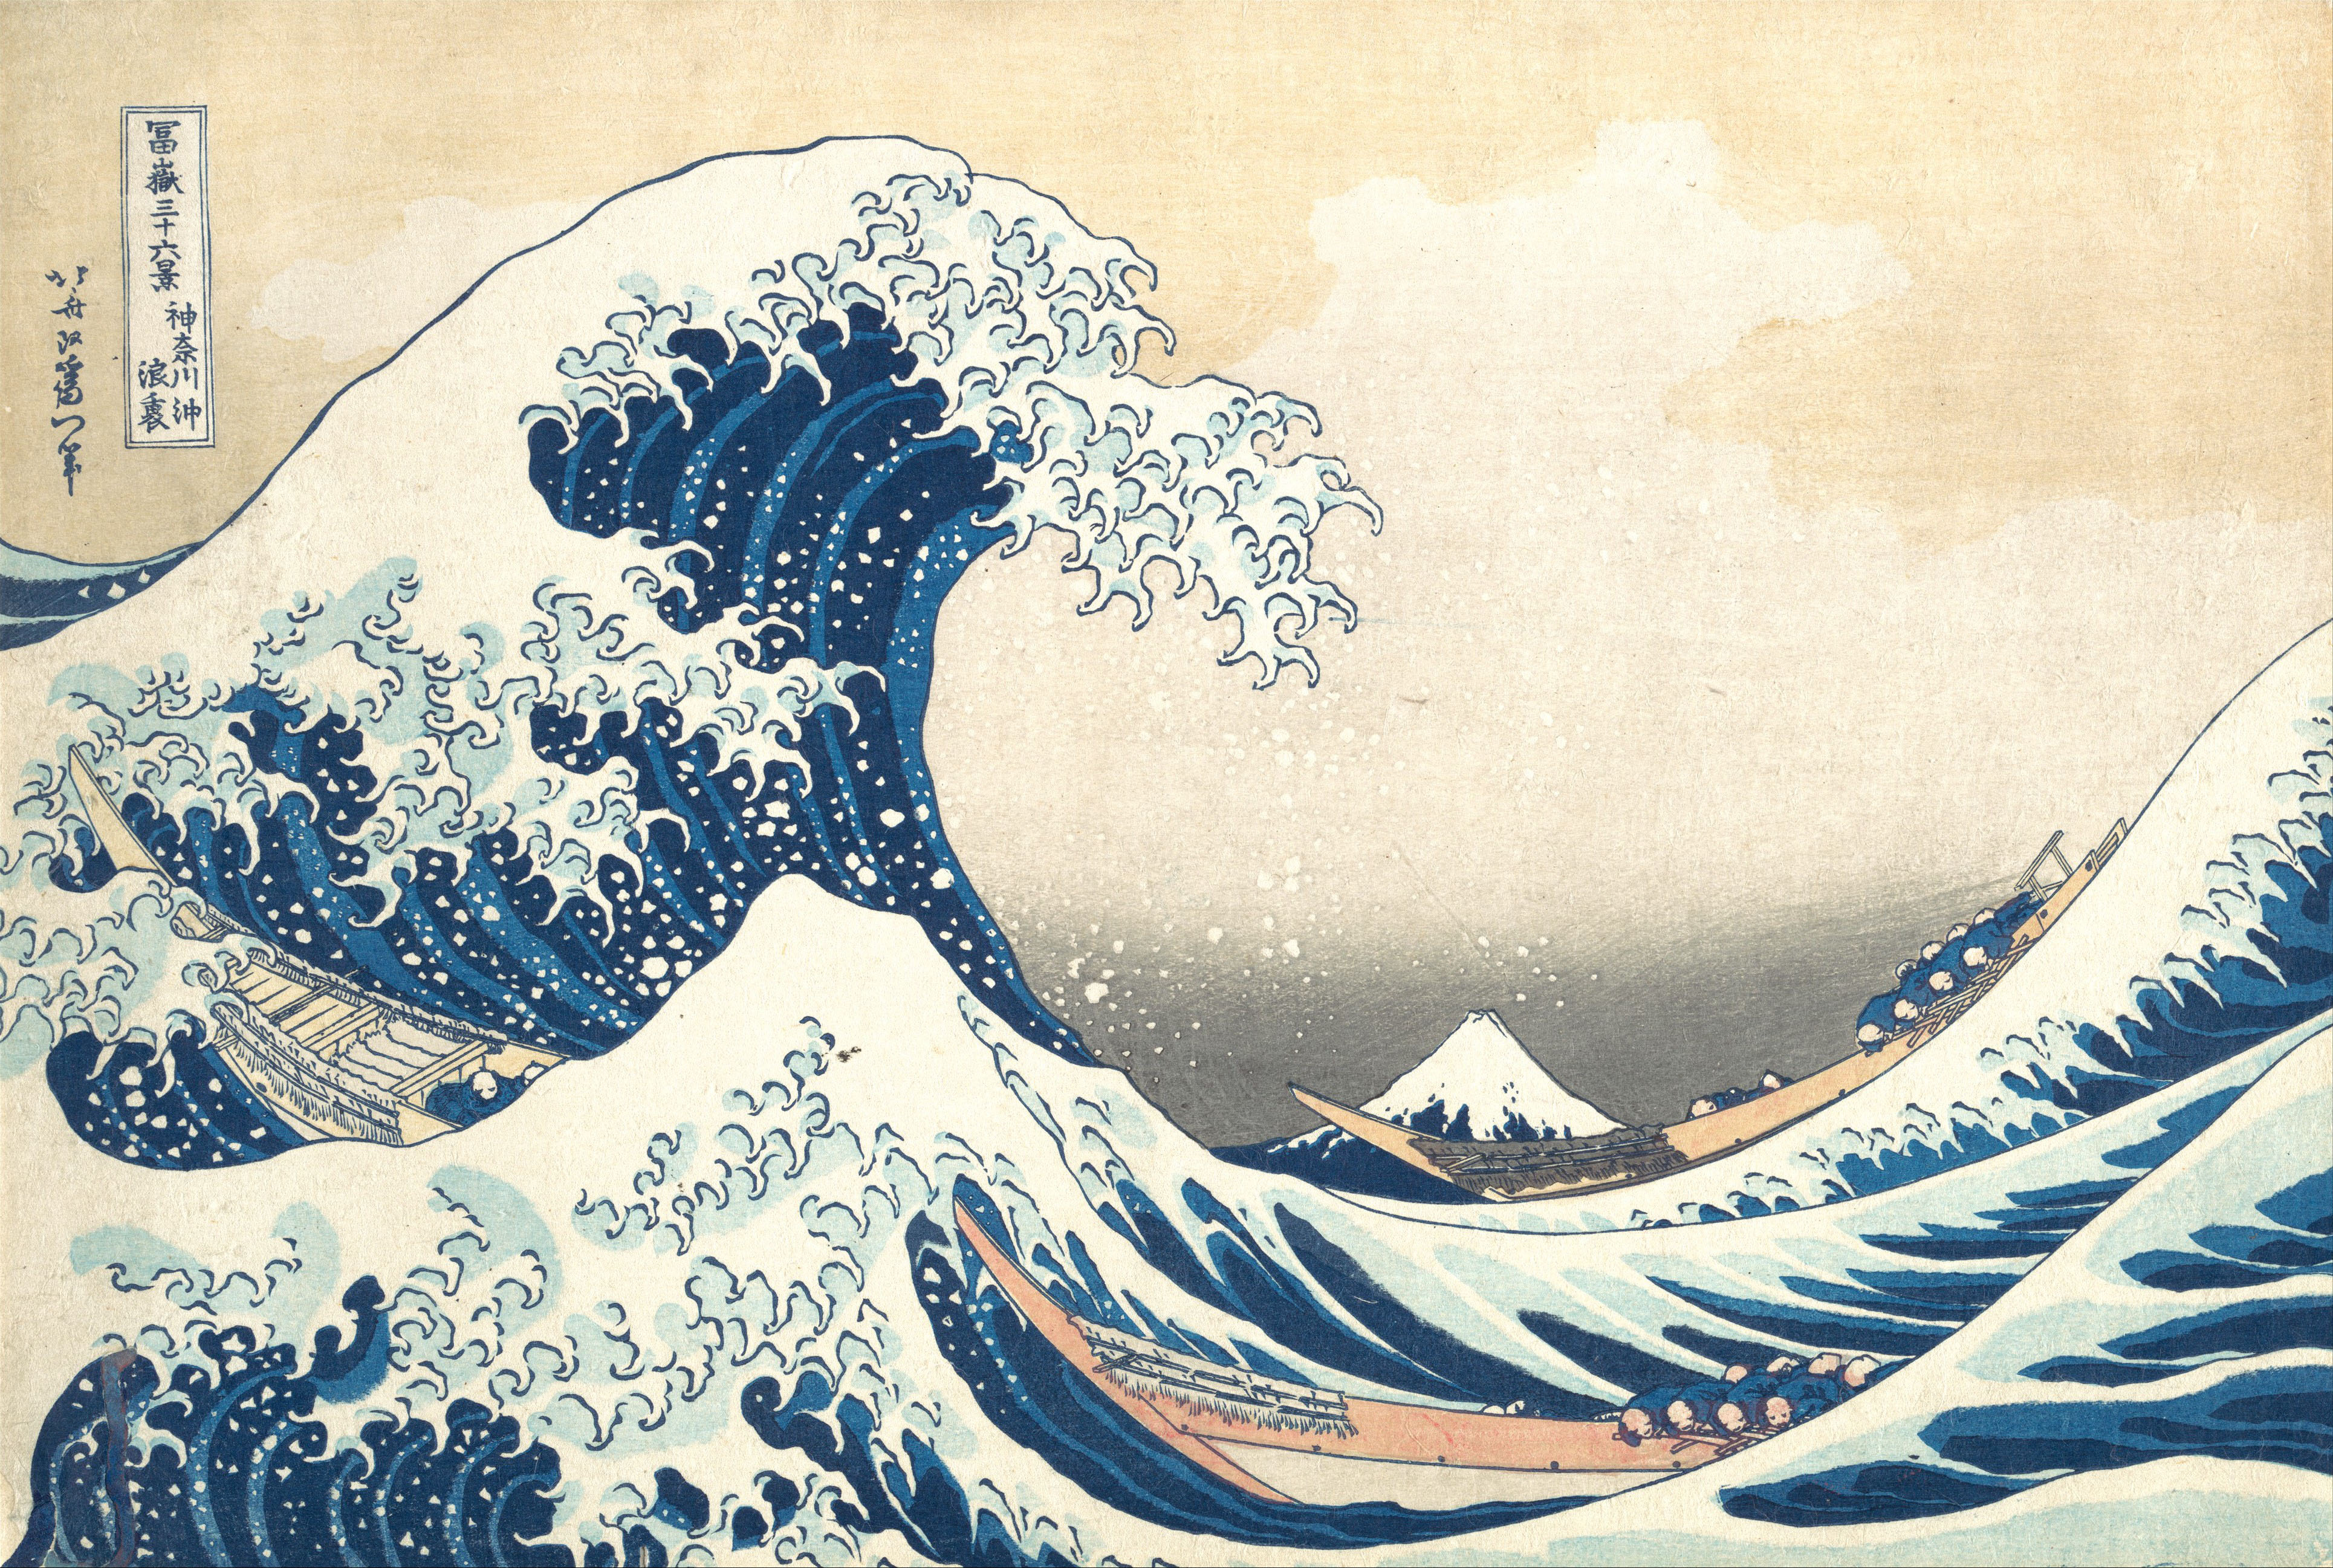 神奈川沖浪裏 (巨浪) by Katsushika Hokusai - 大約西元 1830 - - 